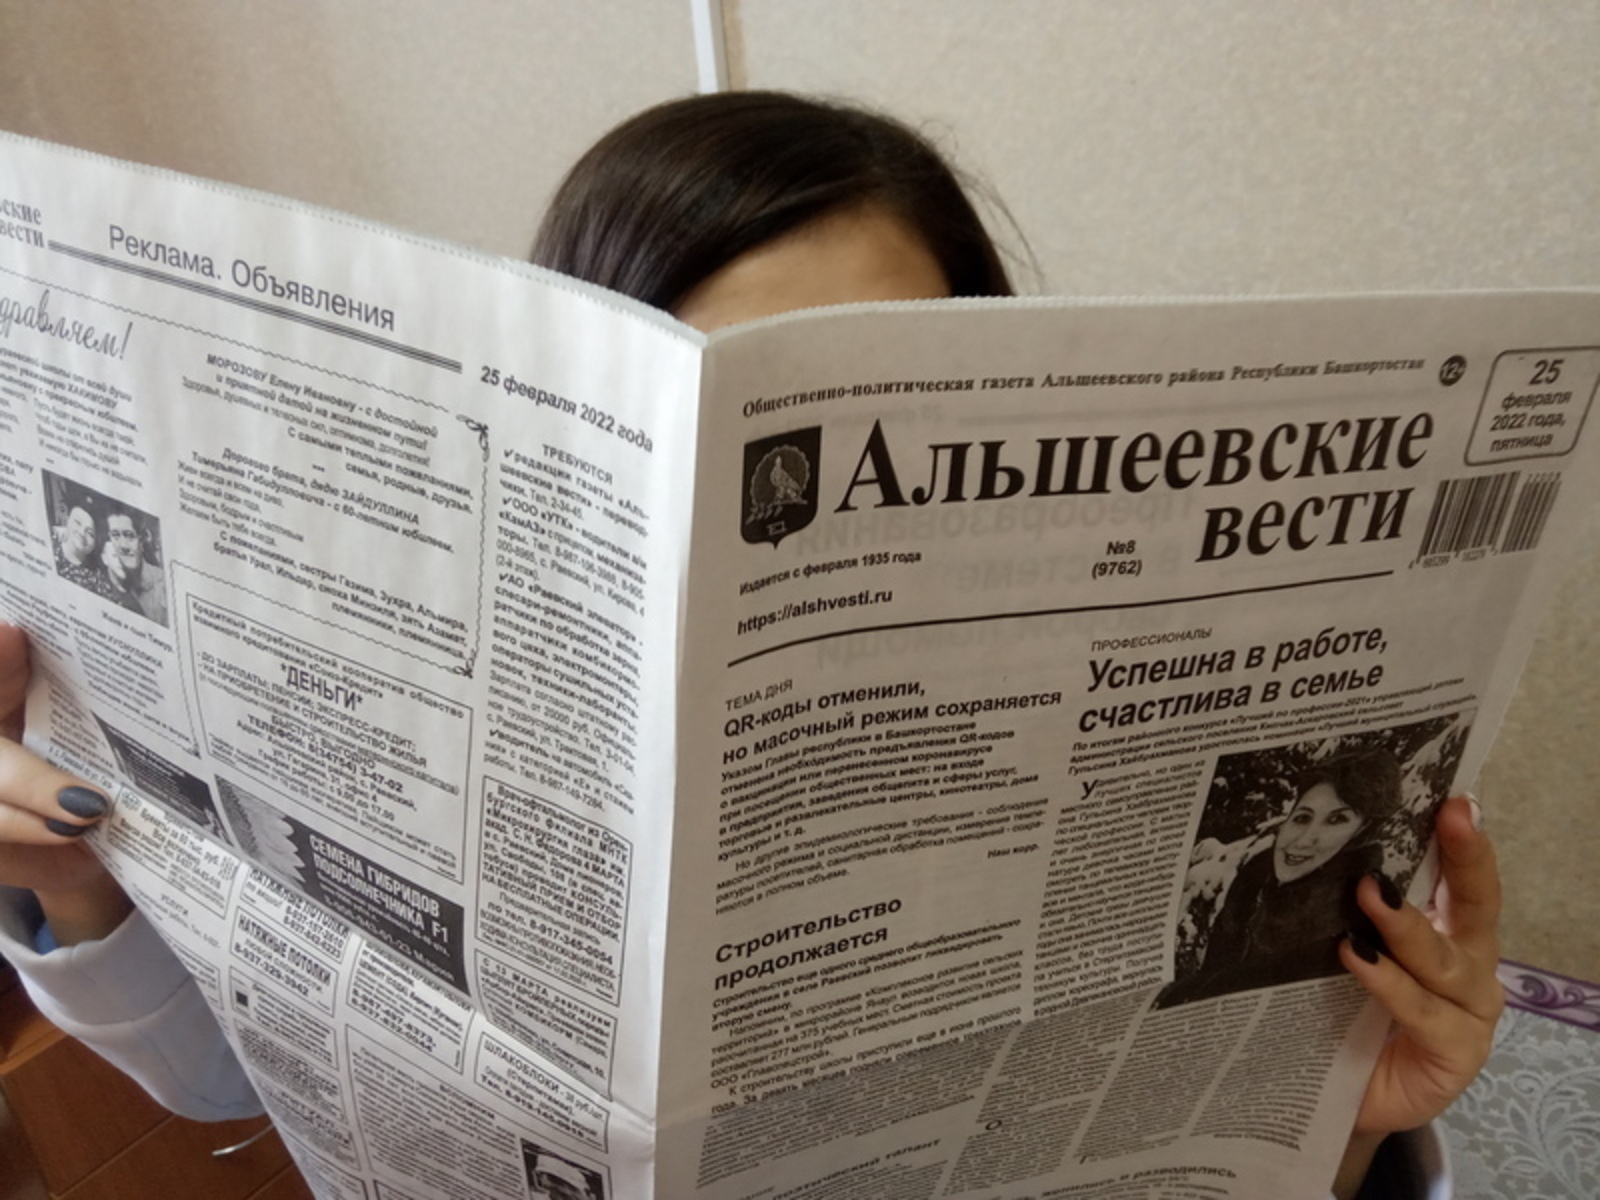 Подпишись на «Альшеевские вести» со скидкой!